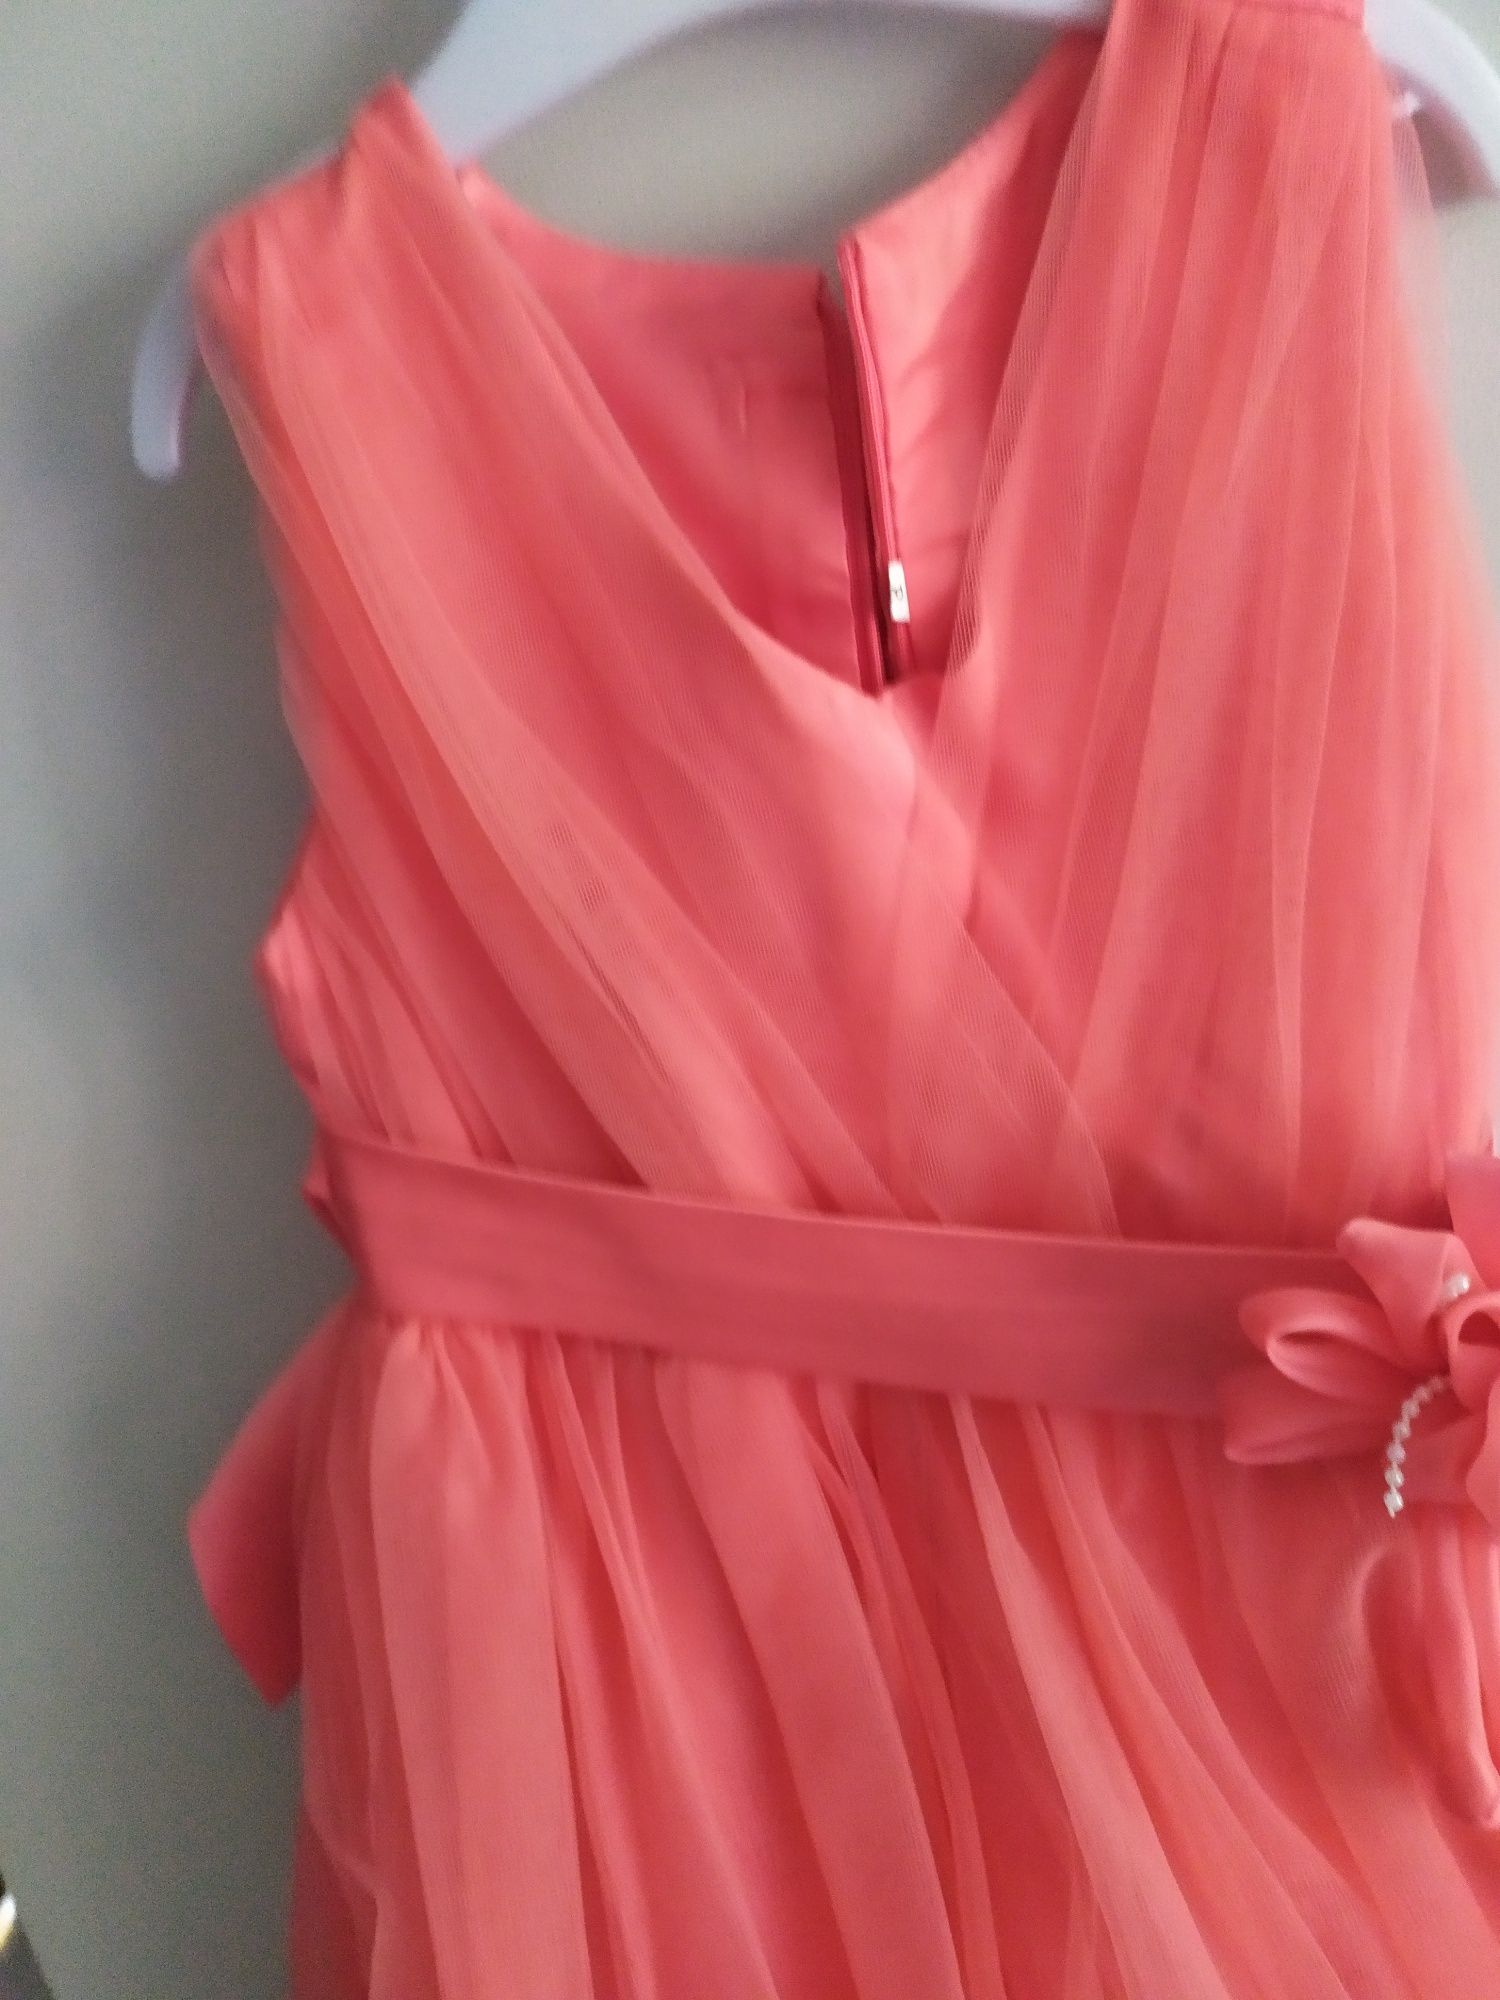 Piękna tiulowa arbuzowa sukienka neon weselna dla księżniczki 104/110